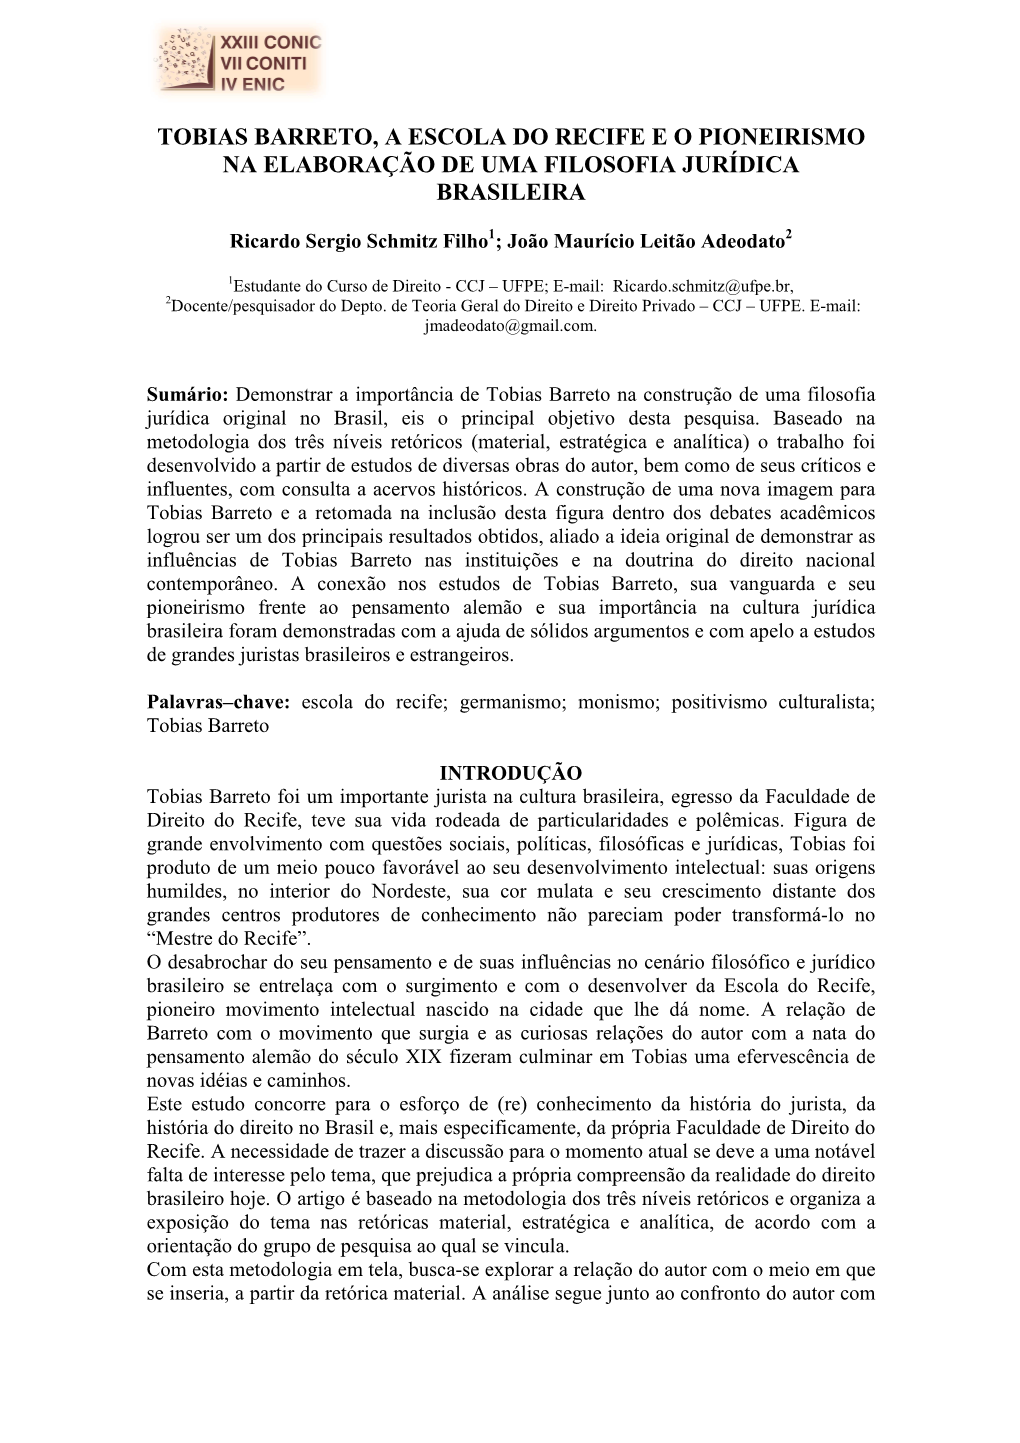 Tobias Barreto, a Escola Do Recife E O Pioneirismo Na Elaboração De Uma Filosofia Jurídica Brasileira